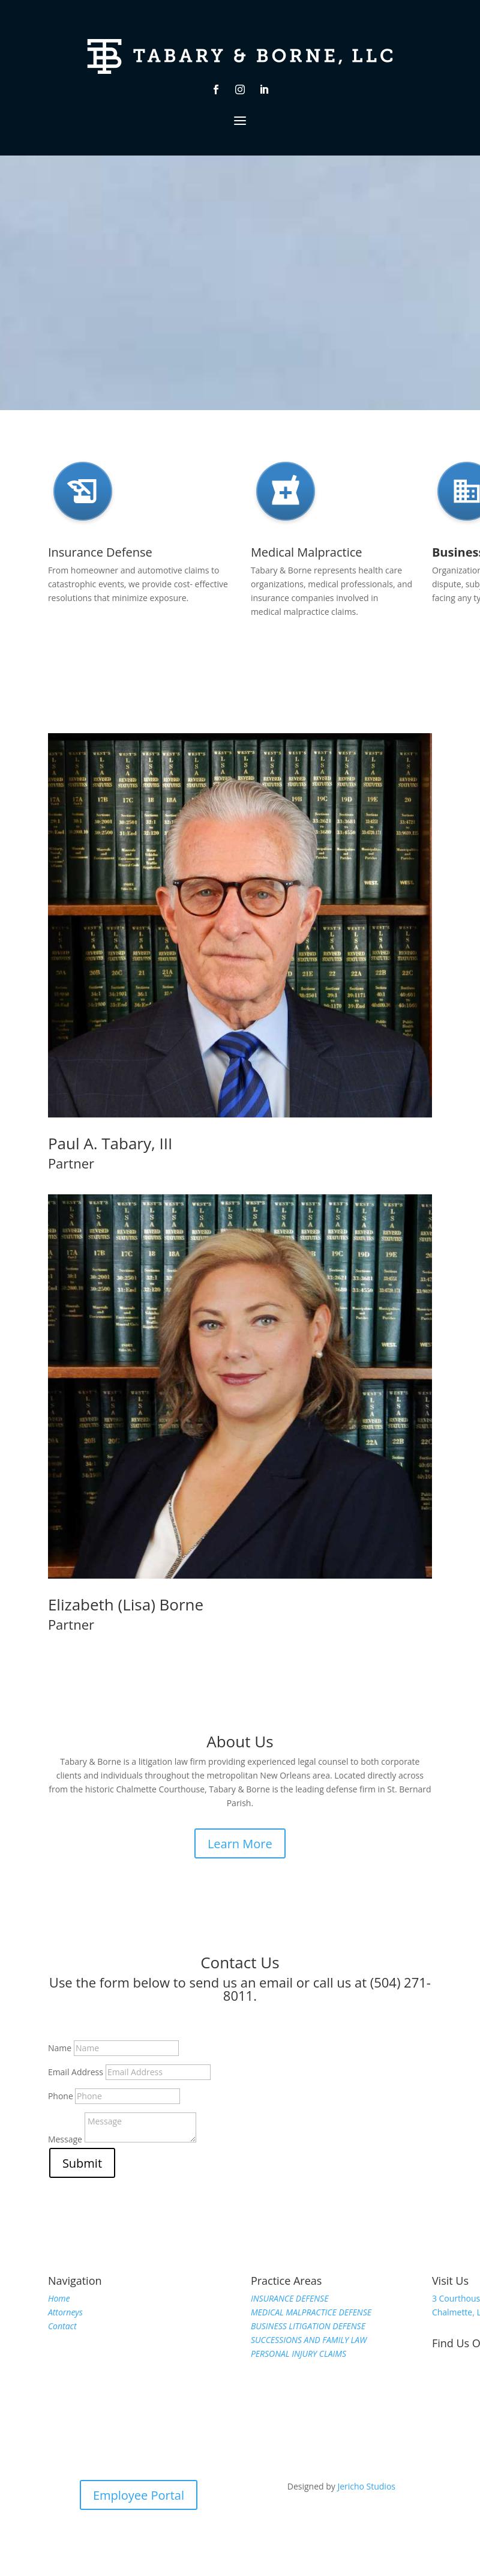 Tabary & Borne - Chalmette LA Lawyers